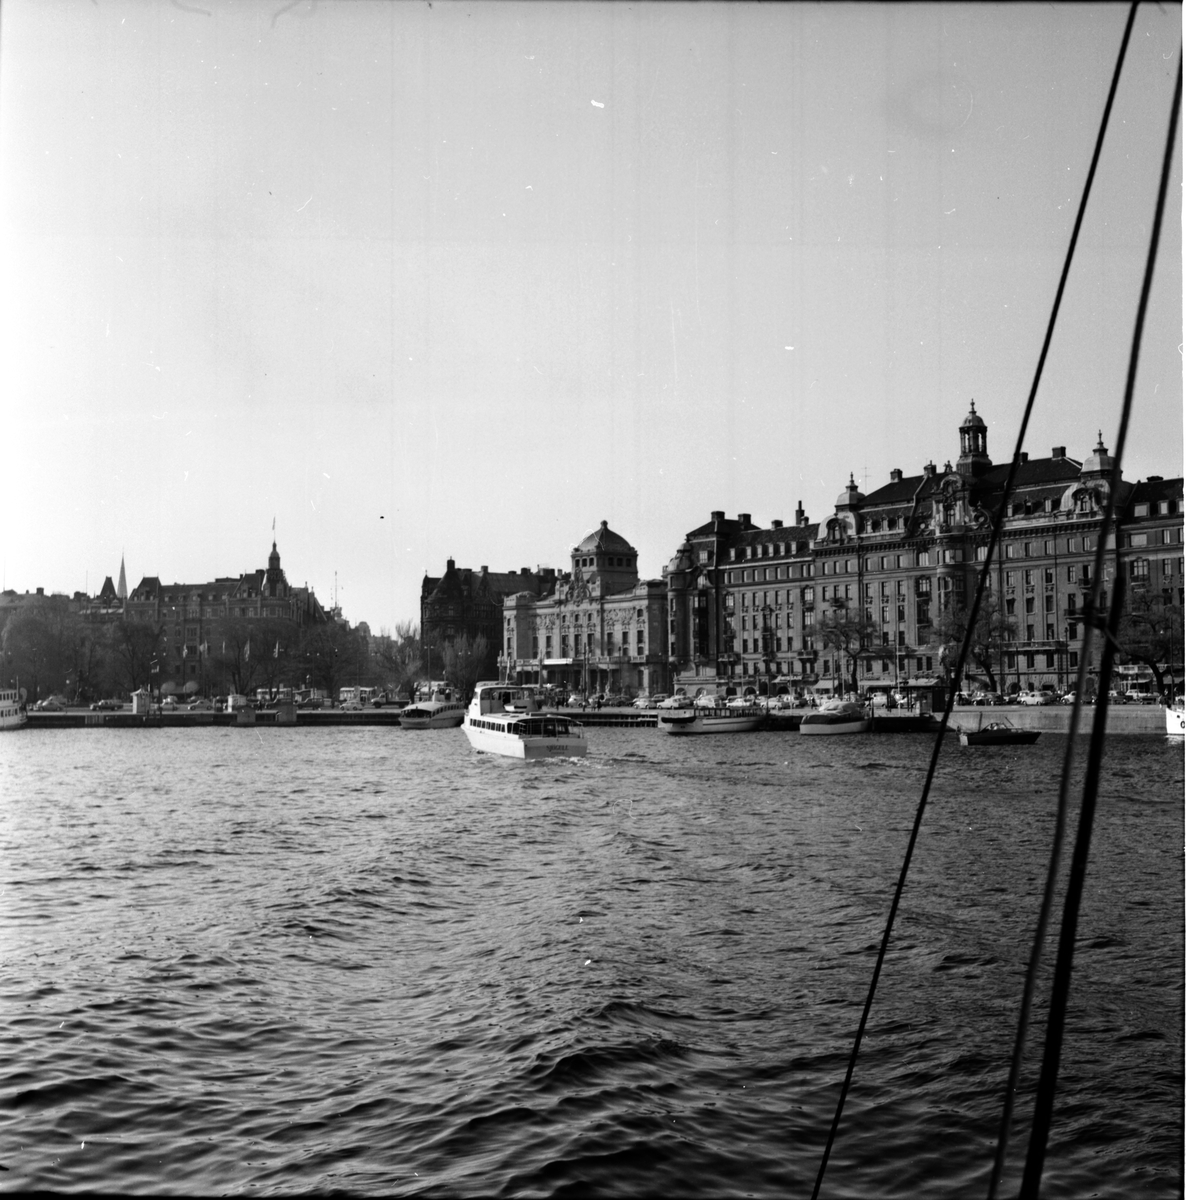 Nybroviken, Stockholm.
18 Maj 1966